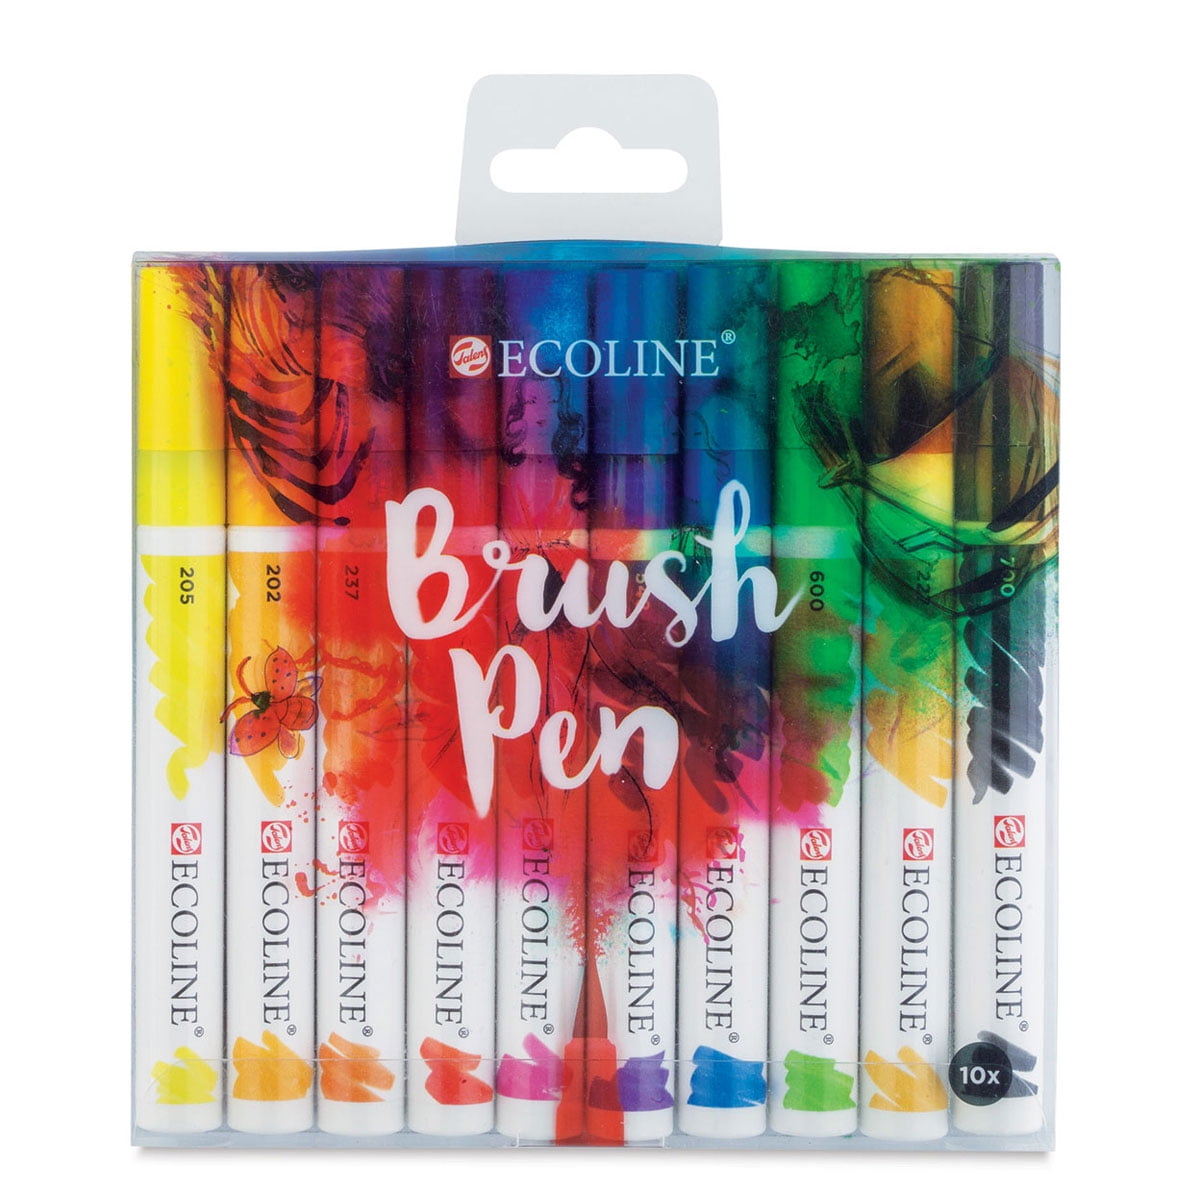 Ecoline Brush Pen Set of 10 - Orange - 8712079442781